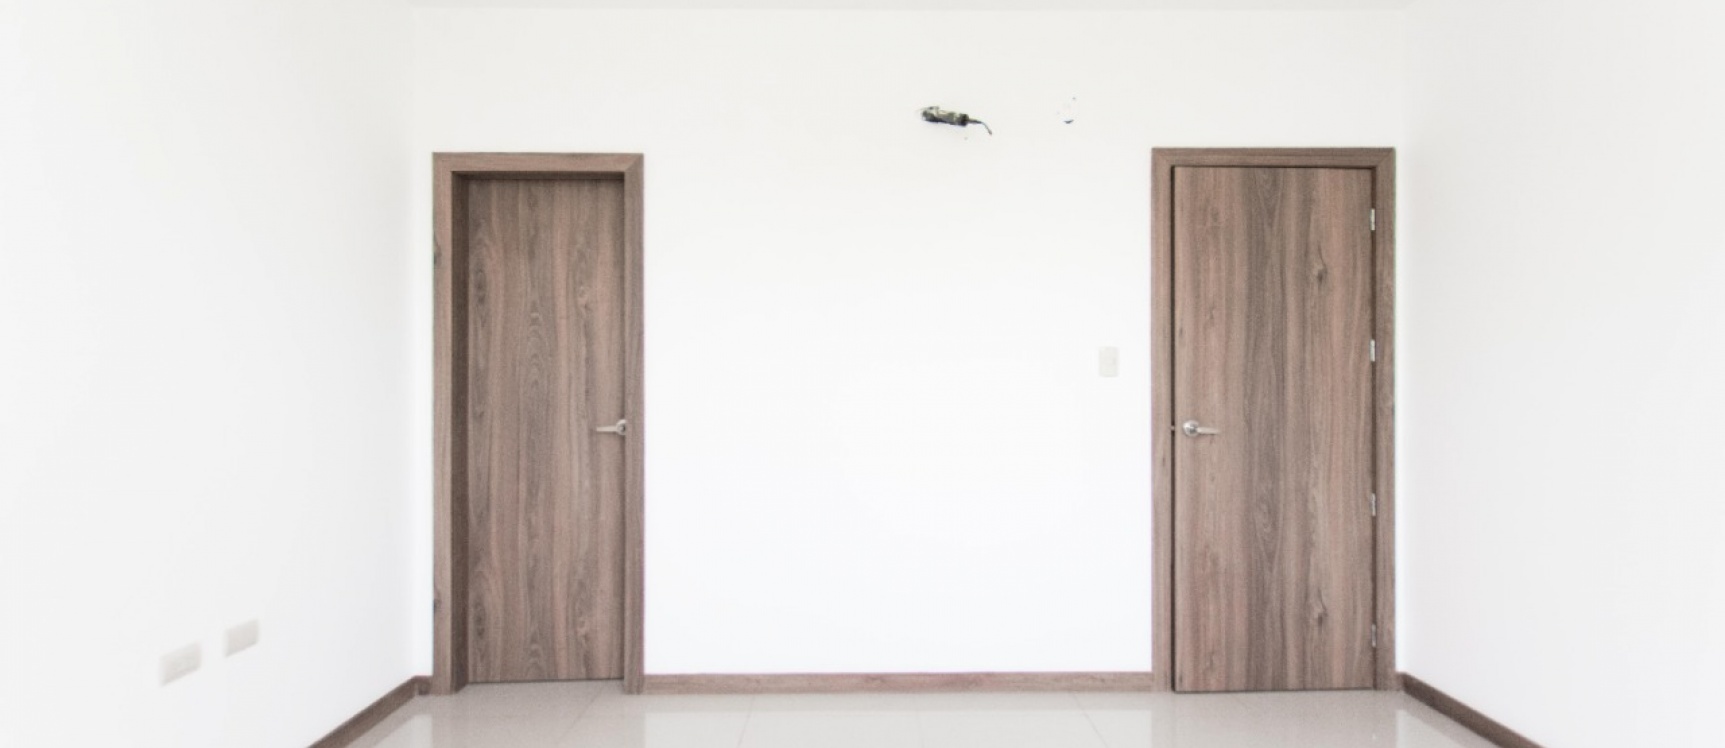 GeoBienes - Departamento de estreno de 3 habitaciones en venta, Urbanización Terranostra - Plusvalia Guayaquil Casas de venta y alquiler Inmobiliaria Ecuador